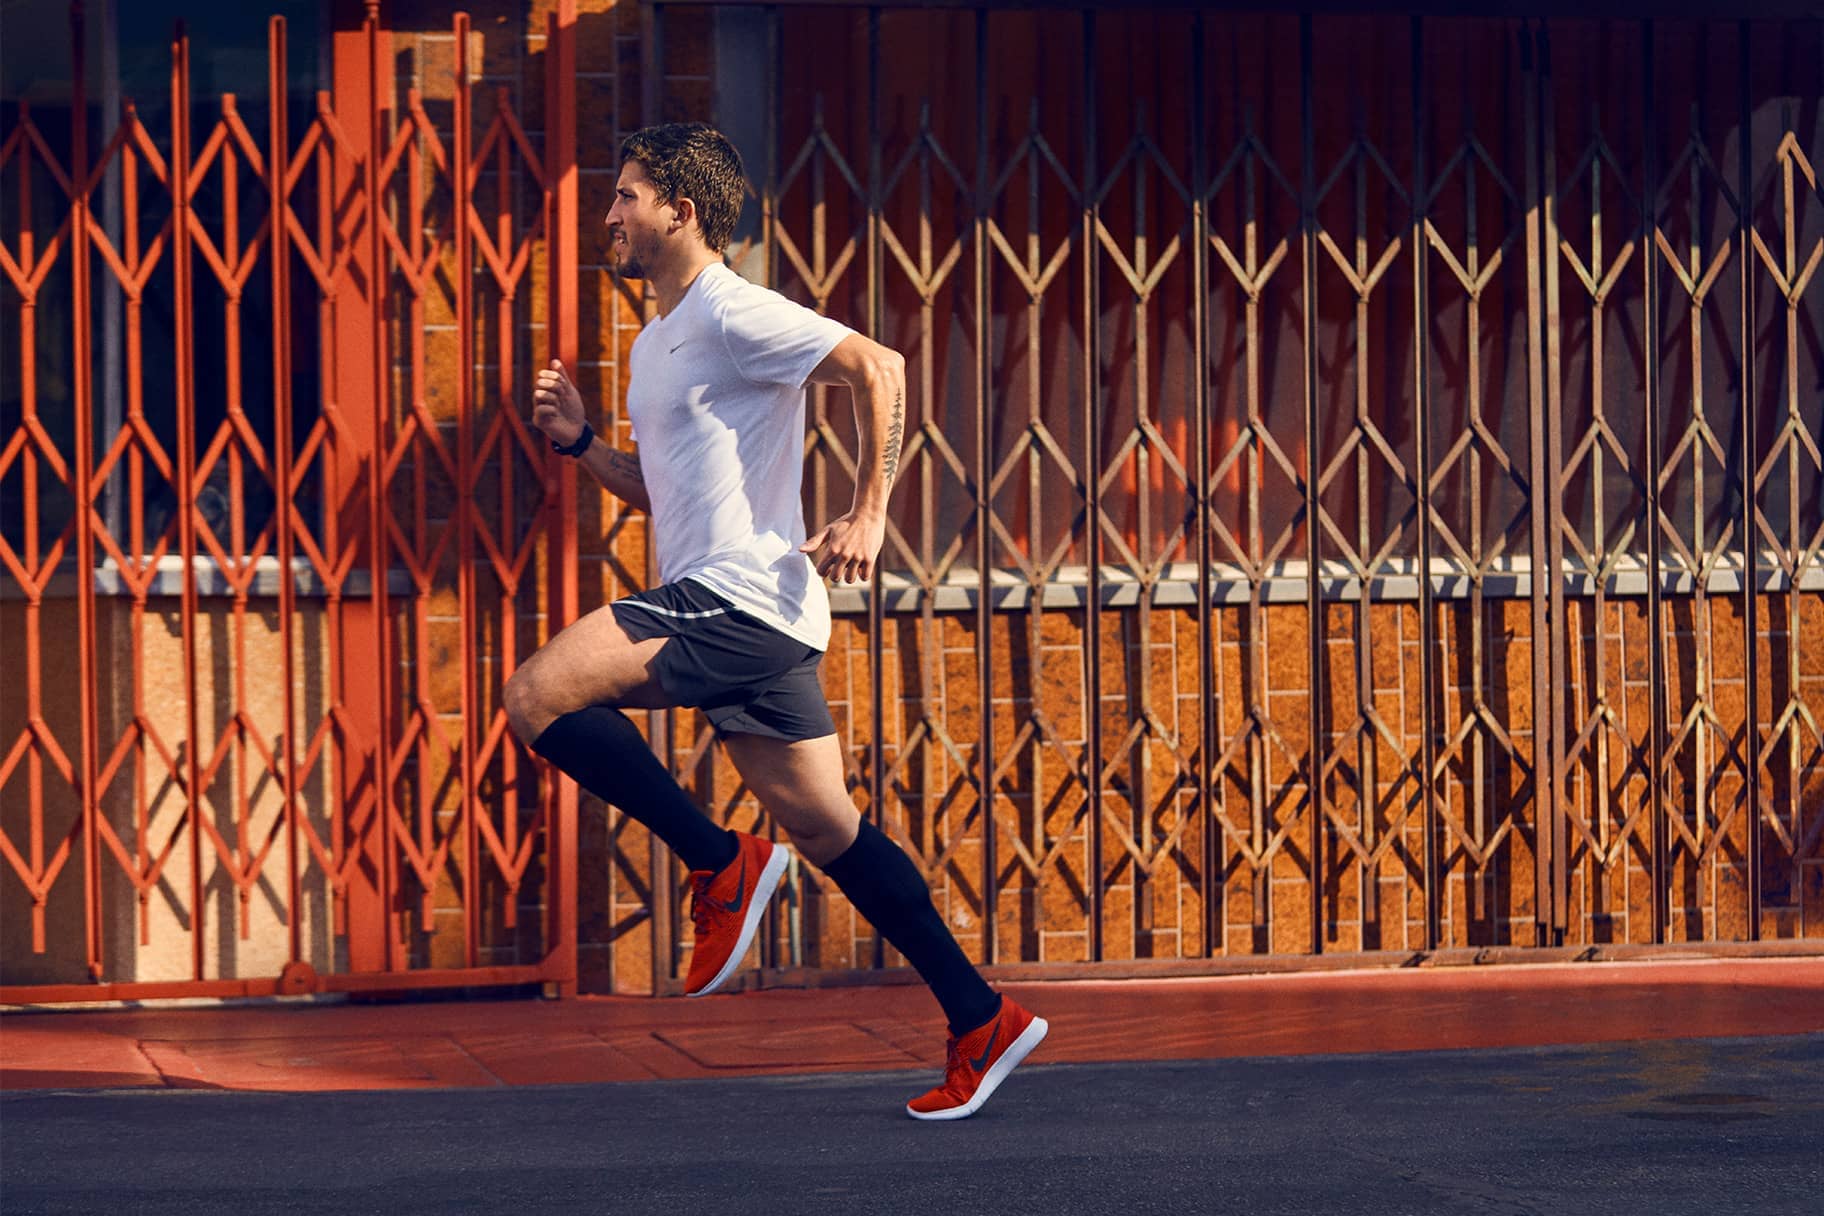 Le meilleur short de running Nike pour femme. Nike LU